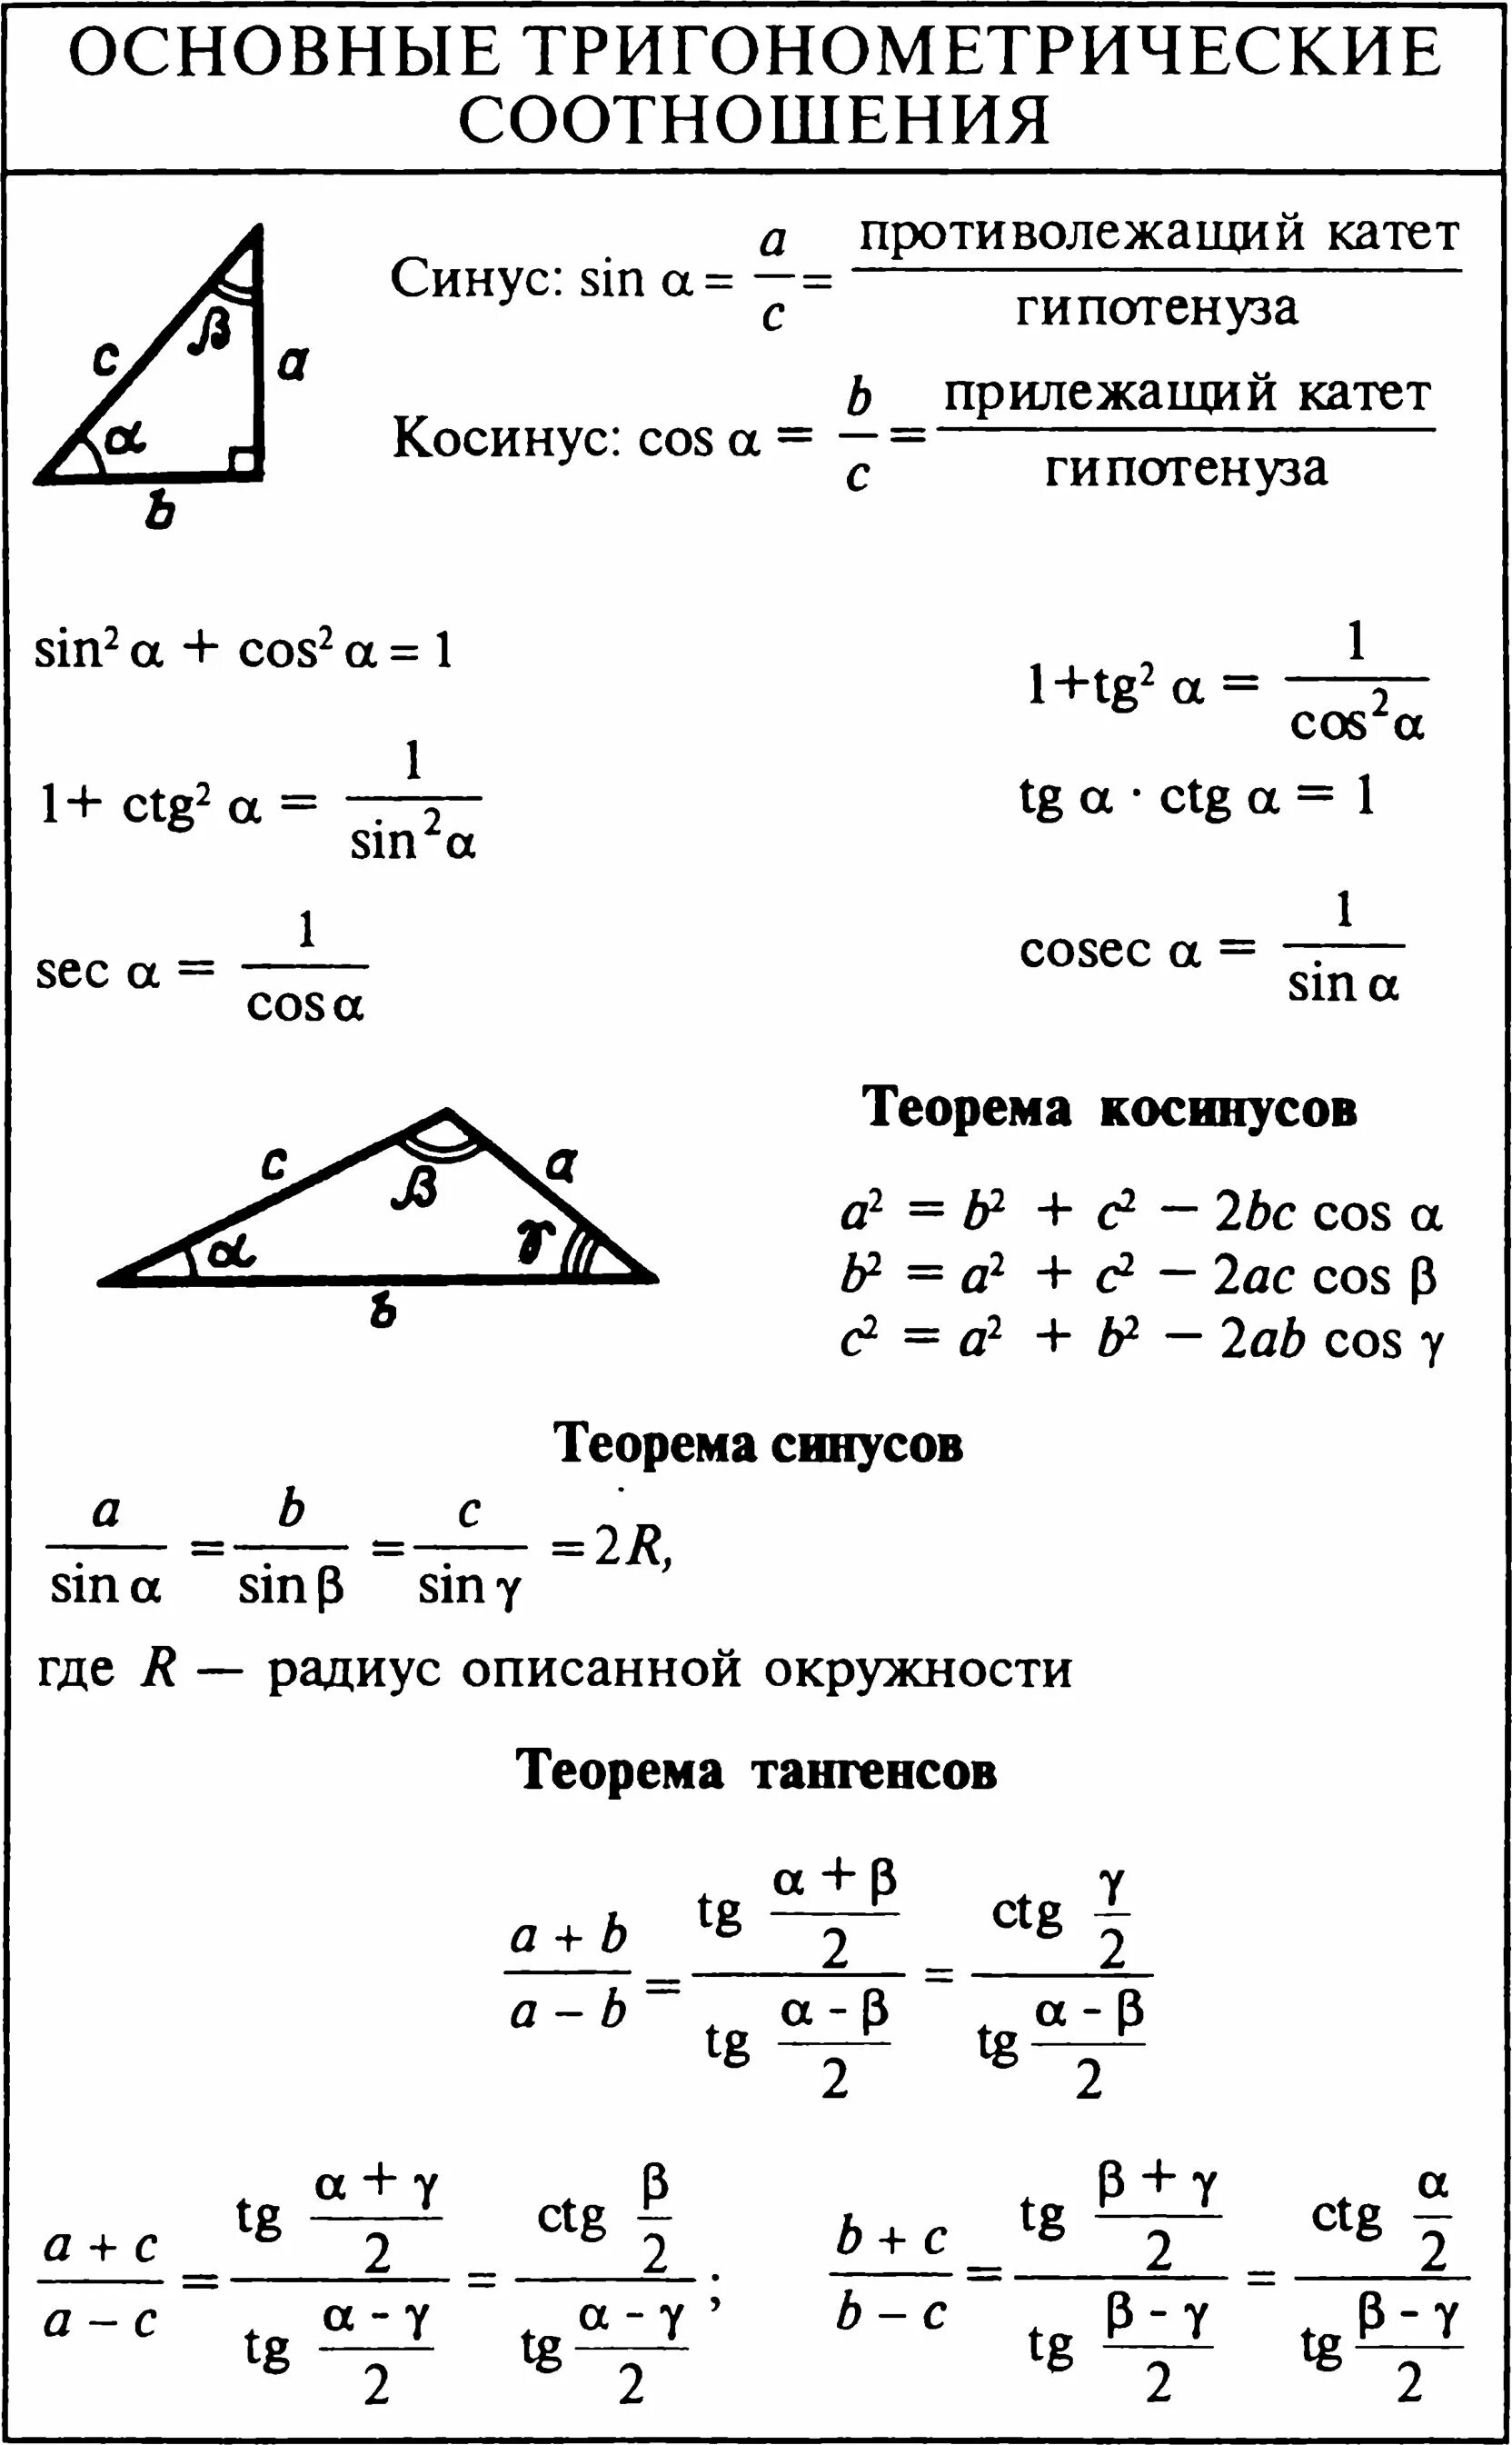 8 формула тригонометрии. Основные тригонометрические формулы 9 класс геометрия. Основные тригонометрические тождества формулы 9 класс. Основные тригонометрические формулы 9 класс Алгебра. Формулы соотношения тригонометрических функций.